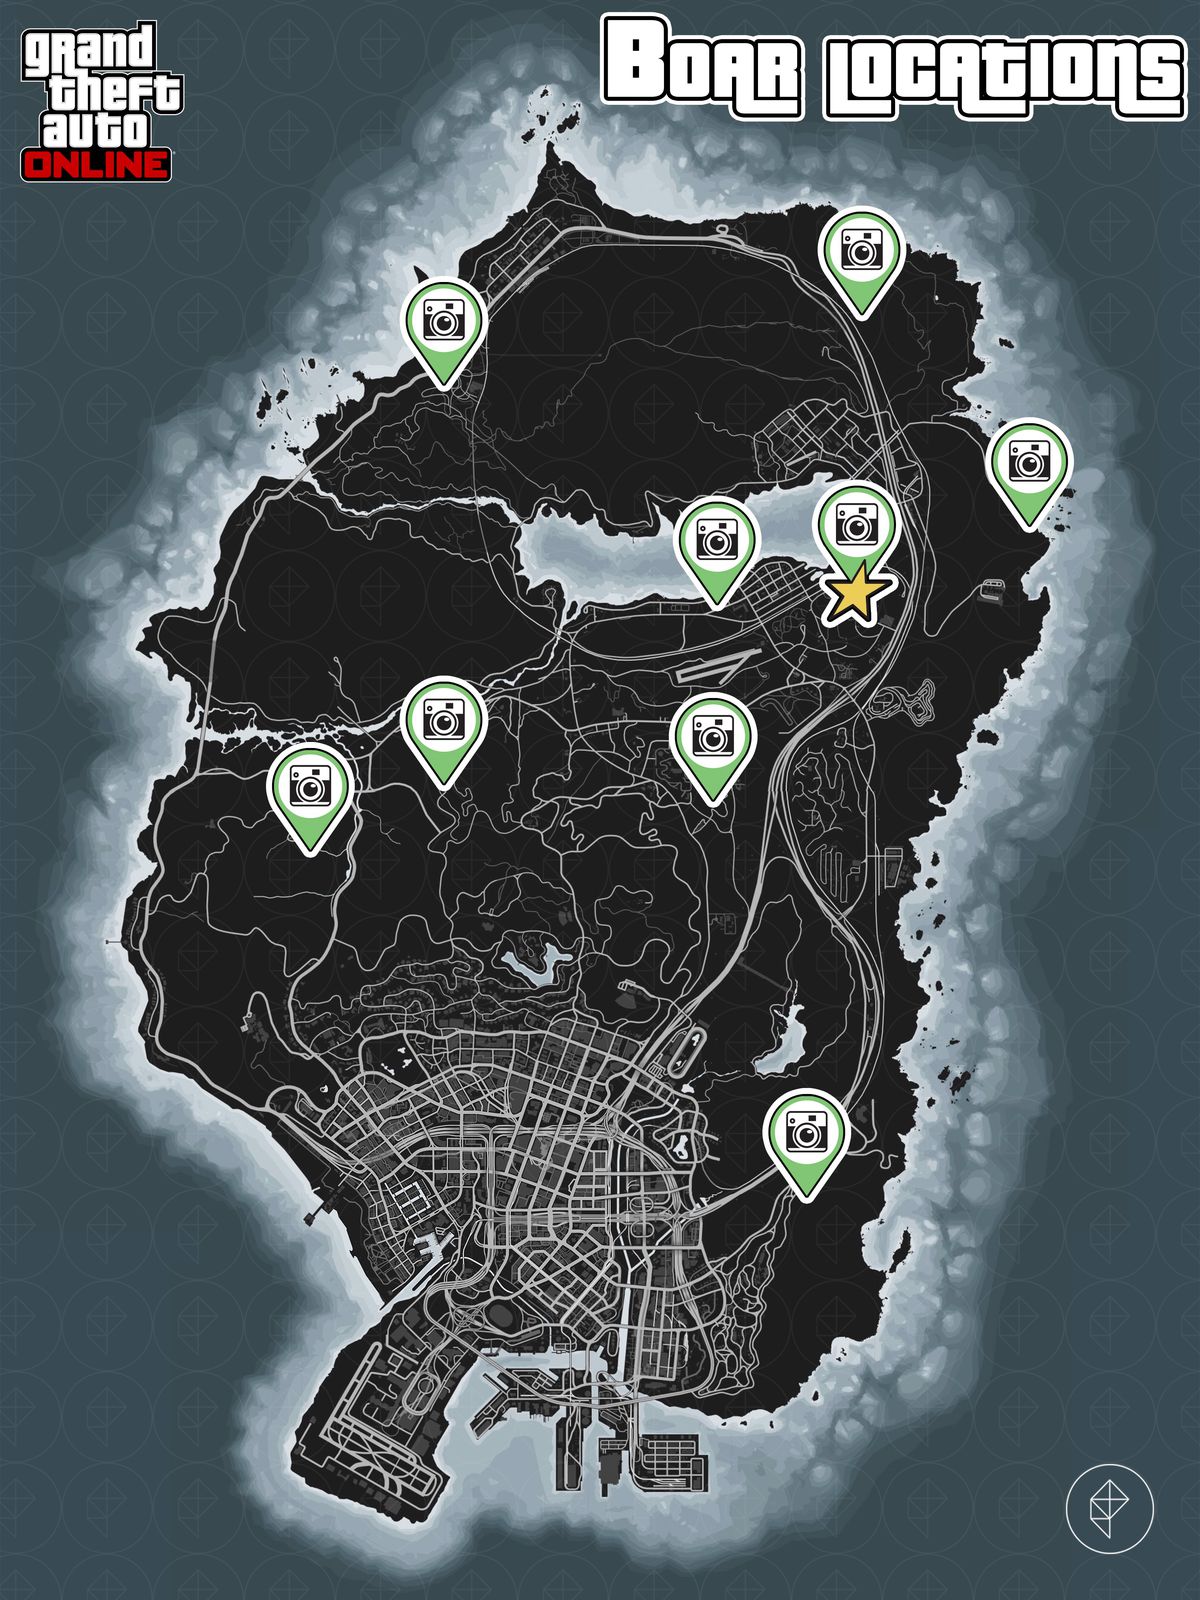 GTA Online map showing boar locations